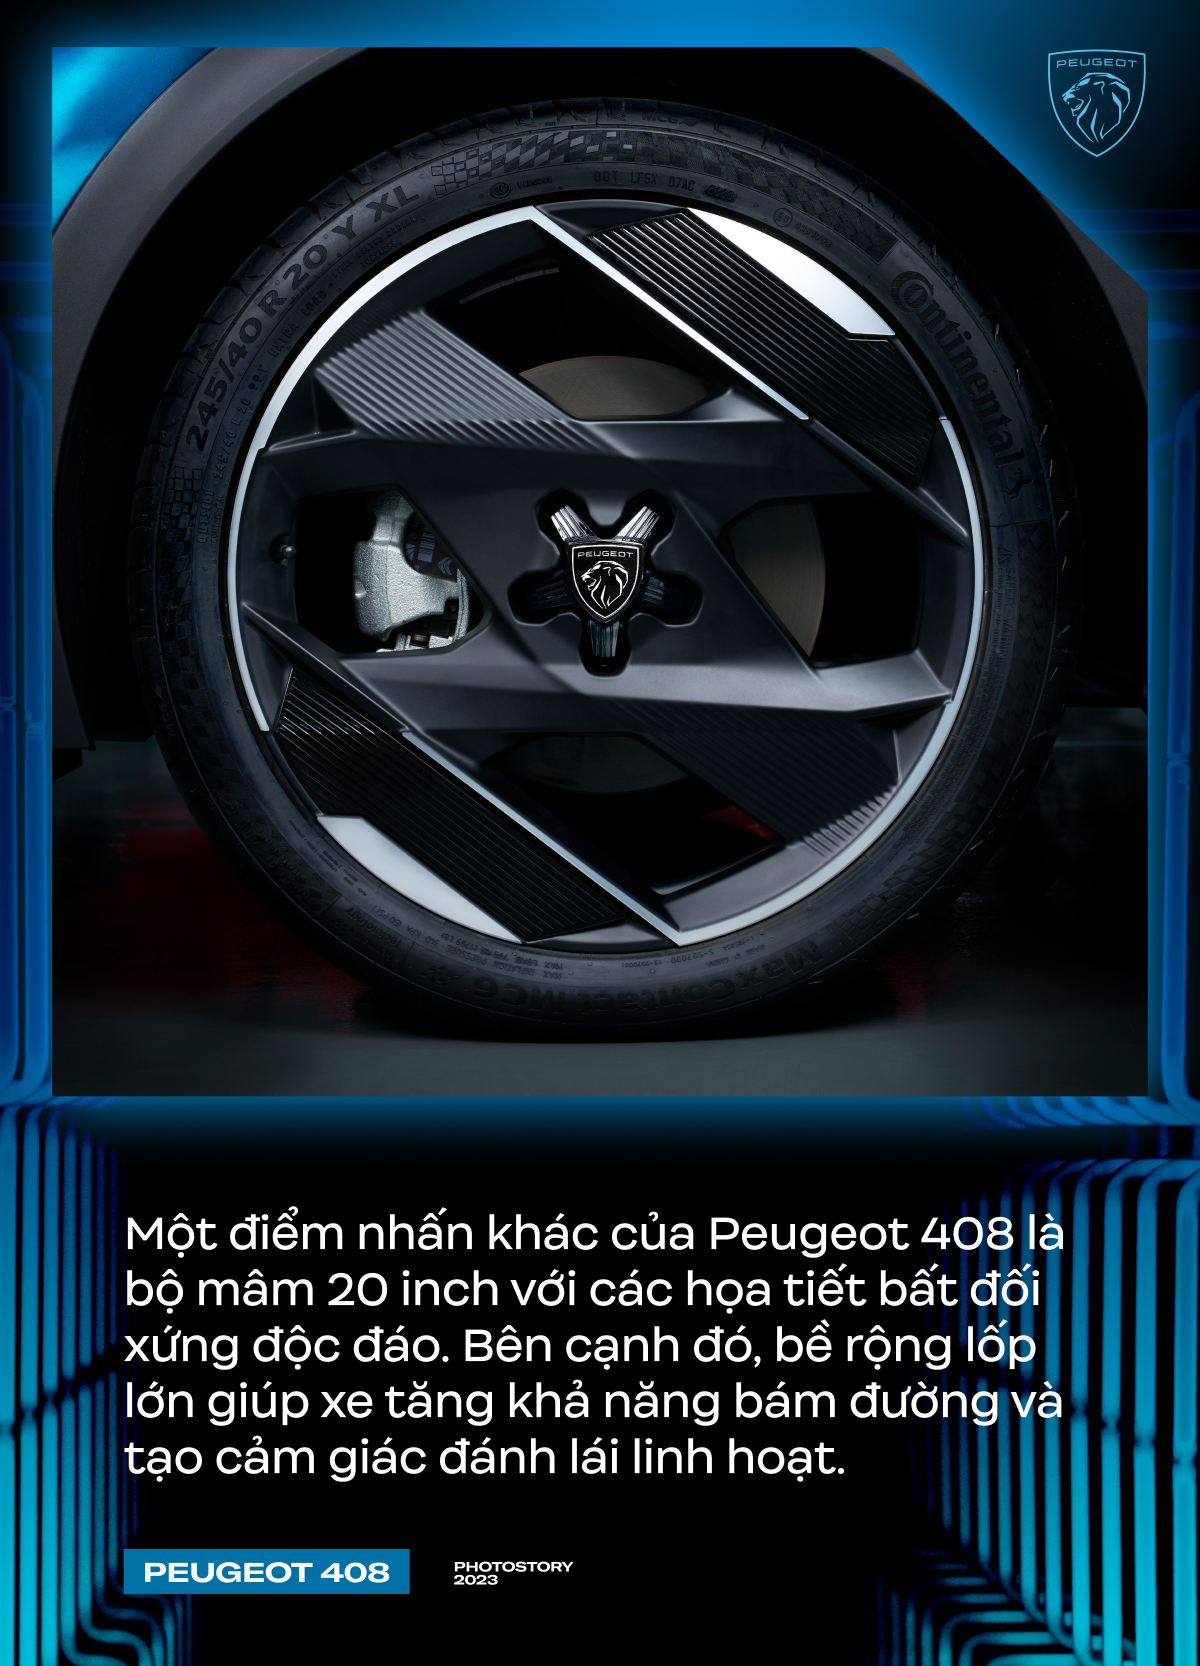 Peugeot 408 - Lựa chọn khác biệt cho người Việt ở phân khúc SUV hạng C - Ảnh 4.